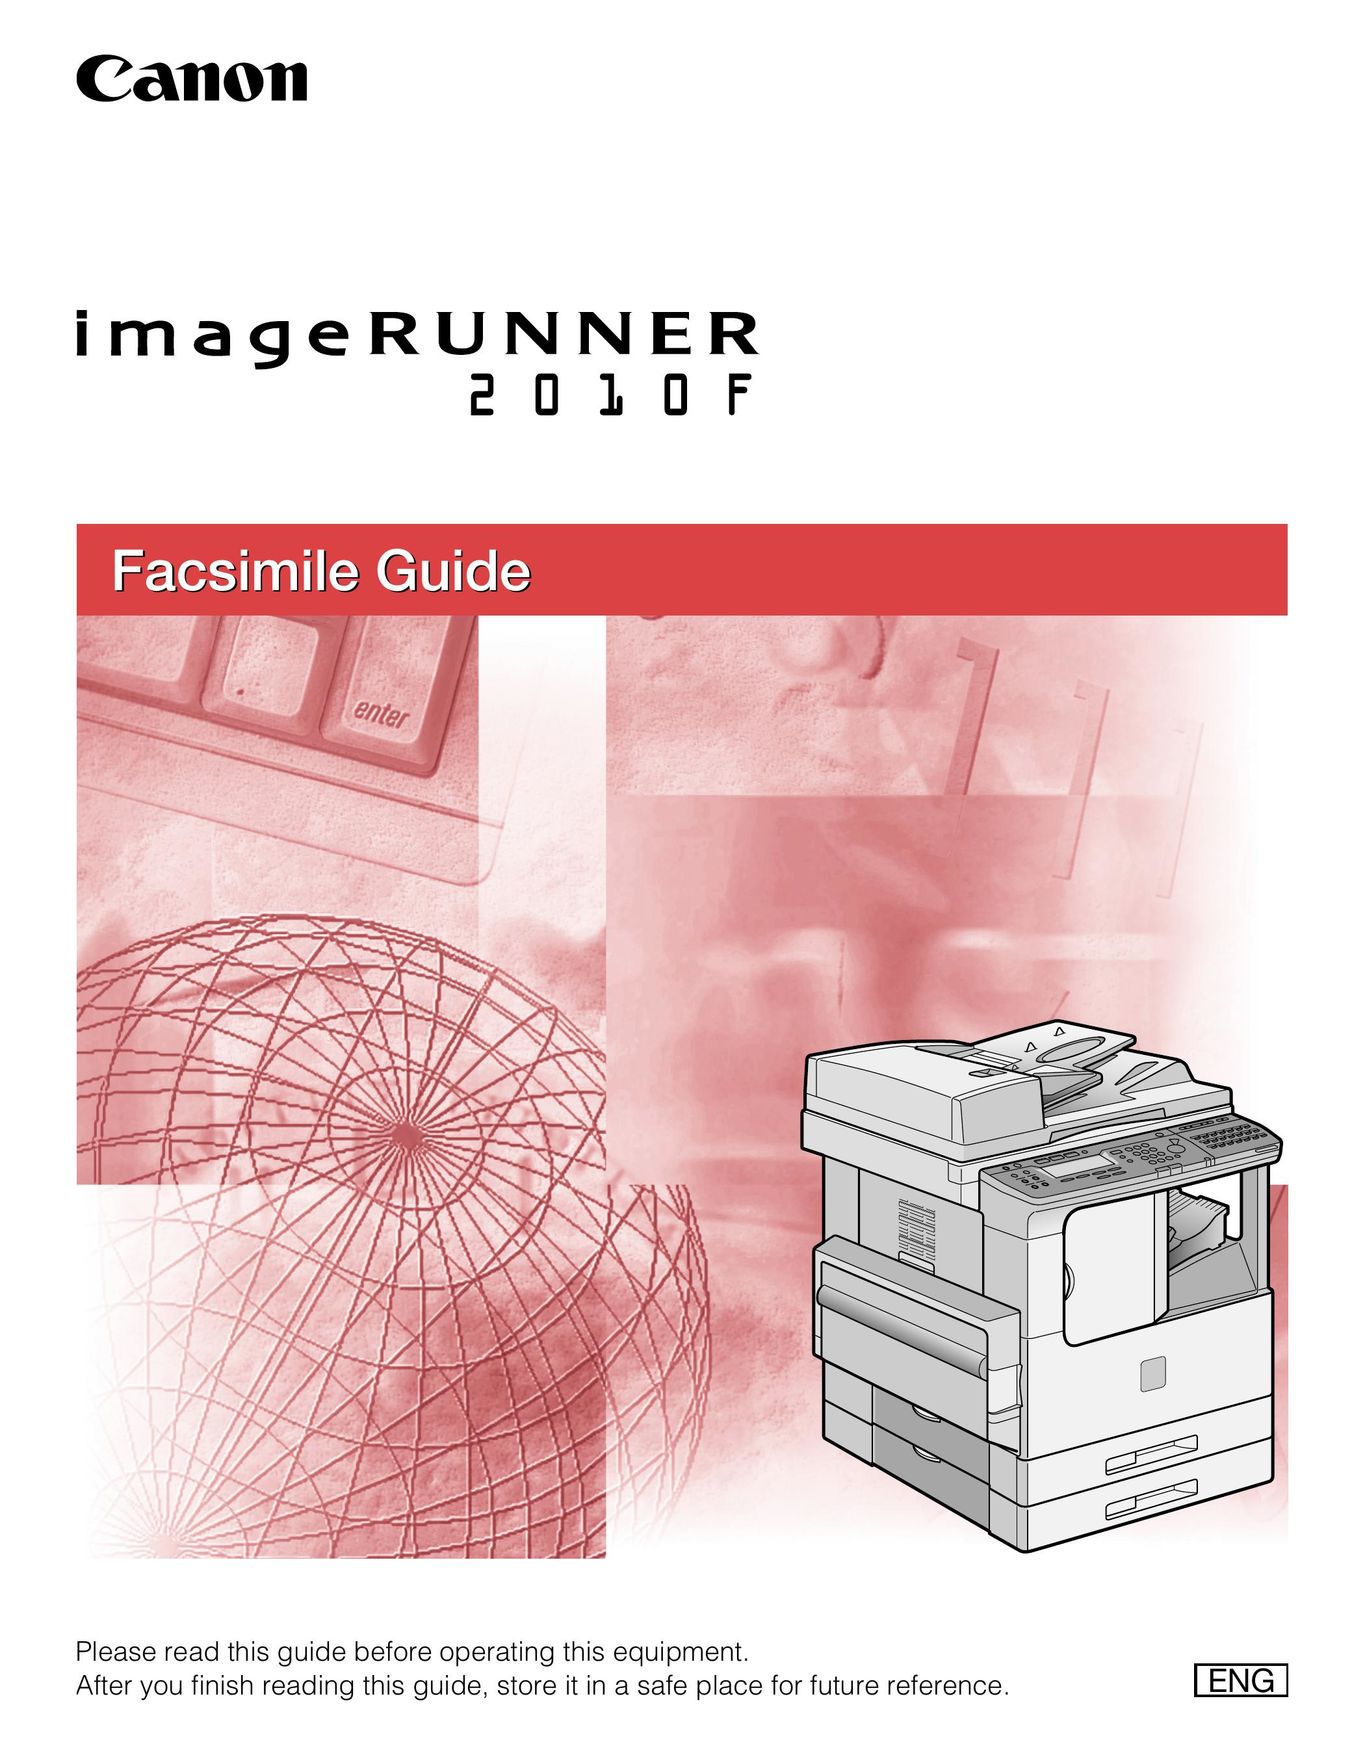 Canon 2010F Fax Machine User Manual